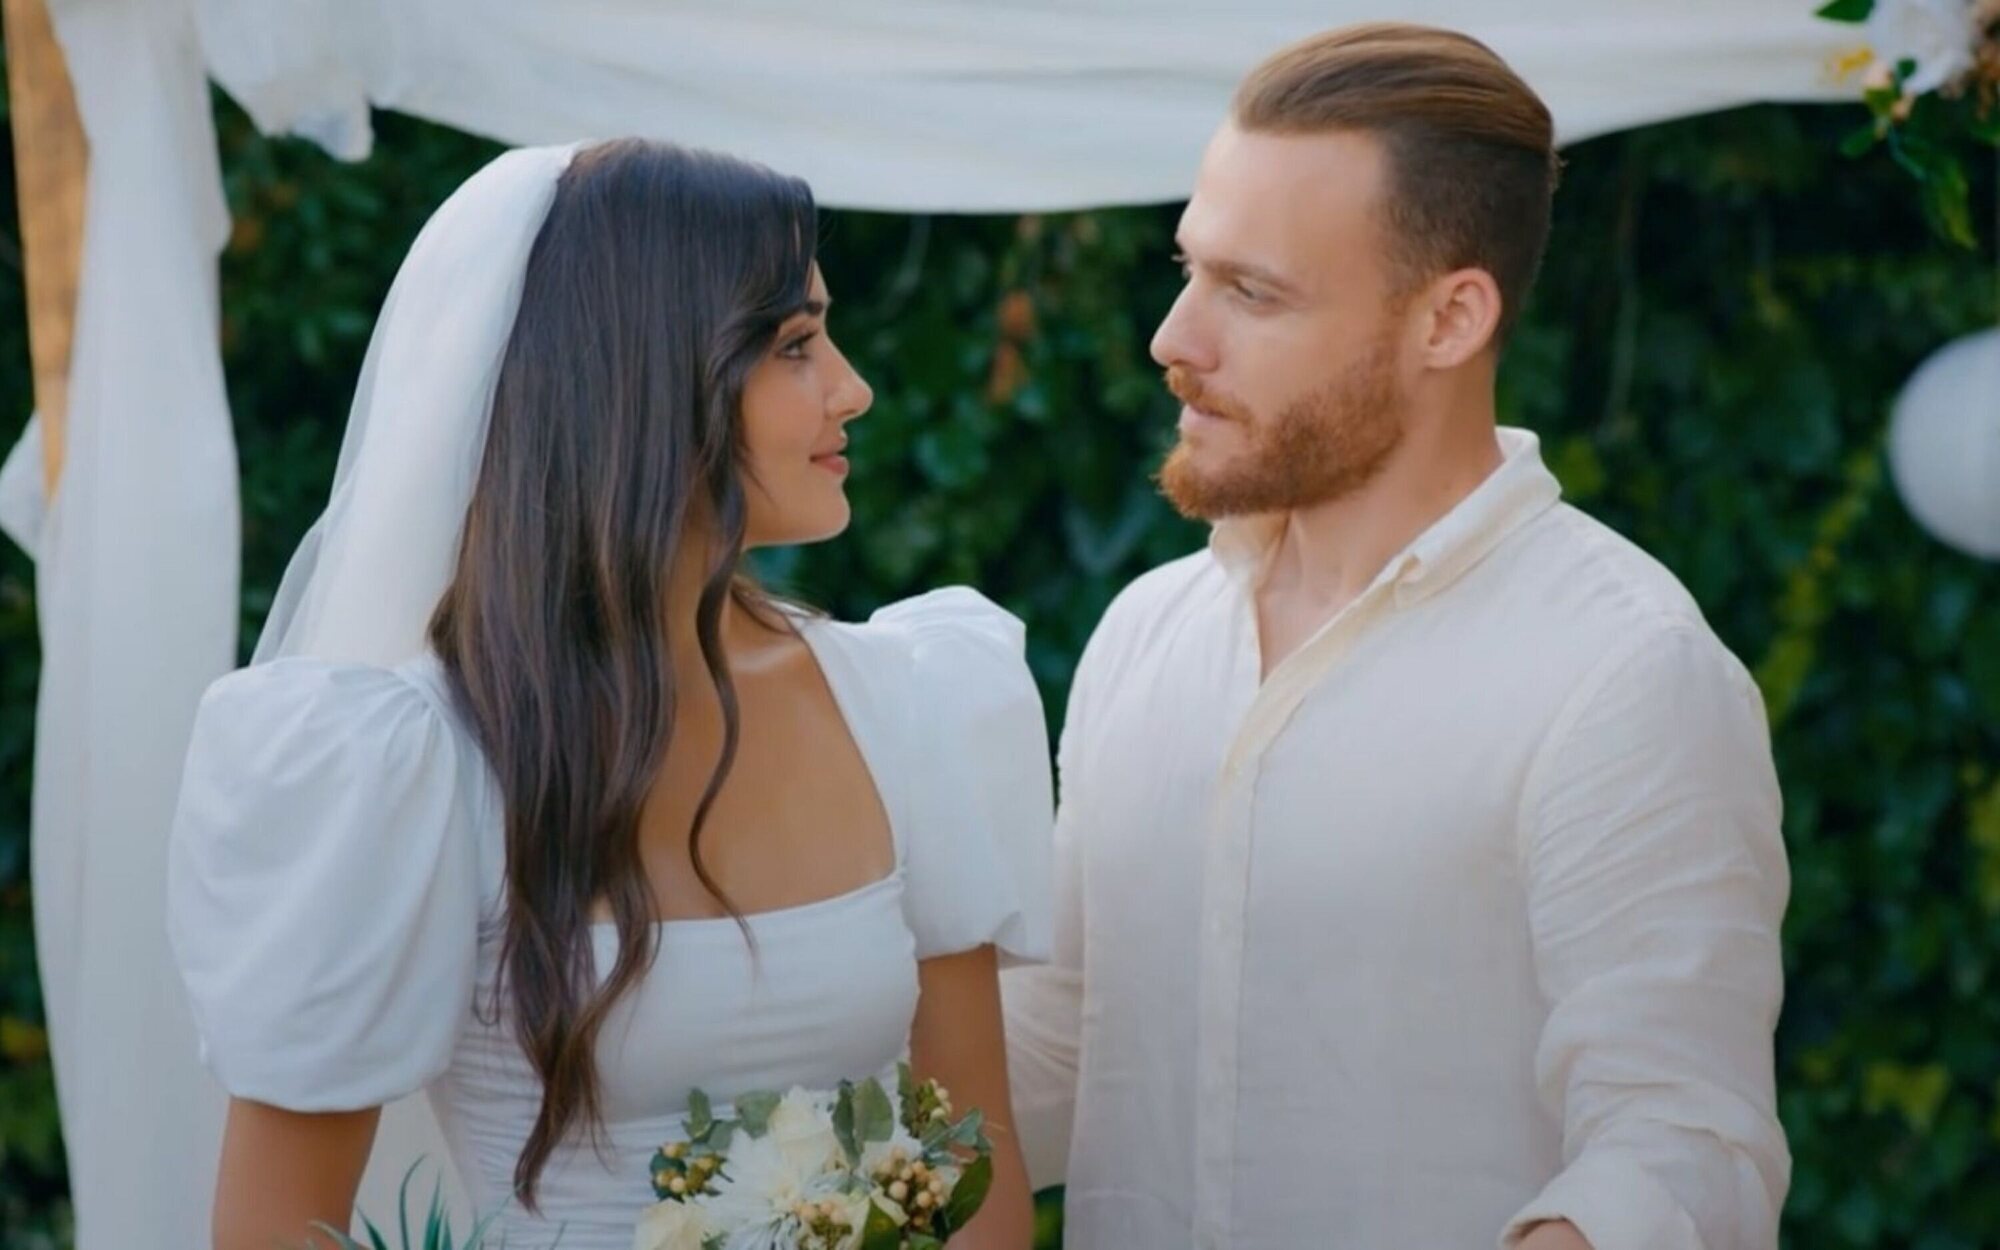 La boda de Eda y Serkan en 'Love is in the air' (5%) enamora en Divinity